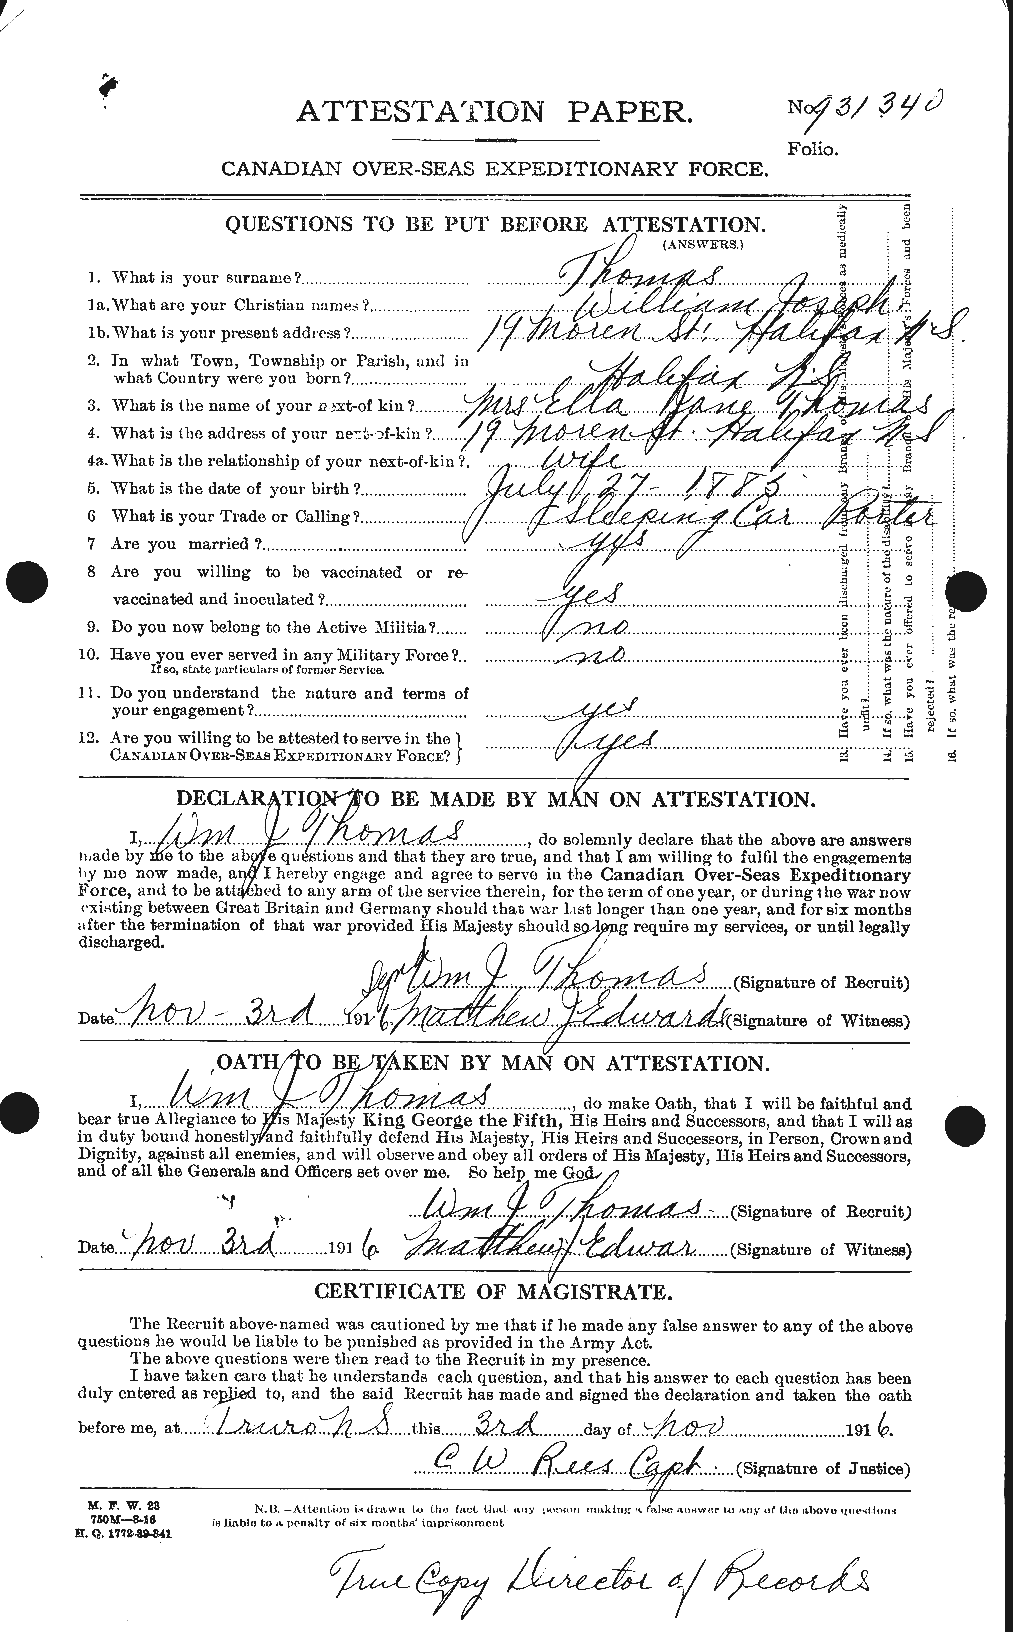 Dossiers du Personnel de la Première Guerre mondiale - CEC 634503a